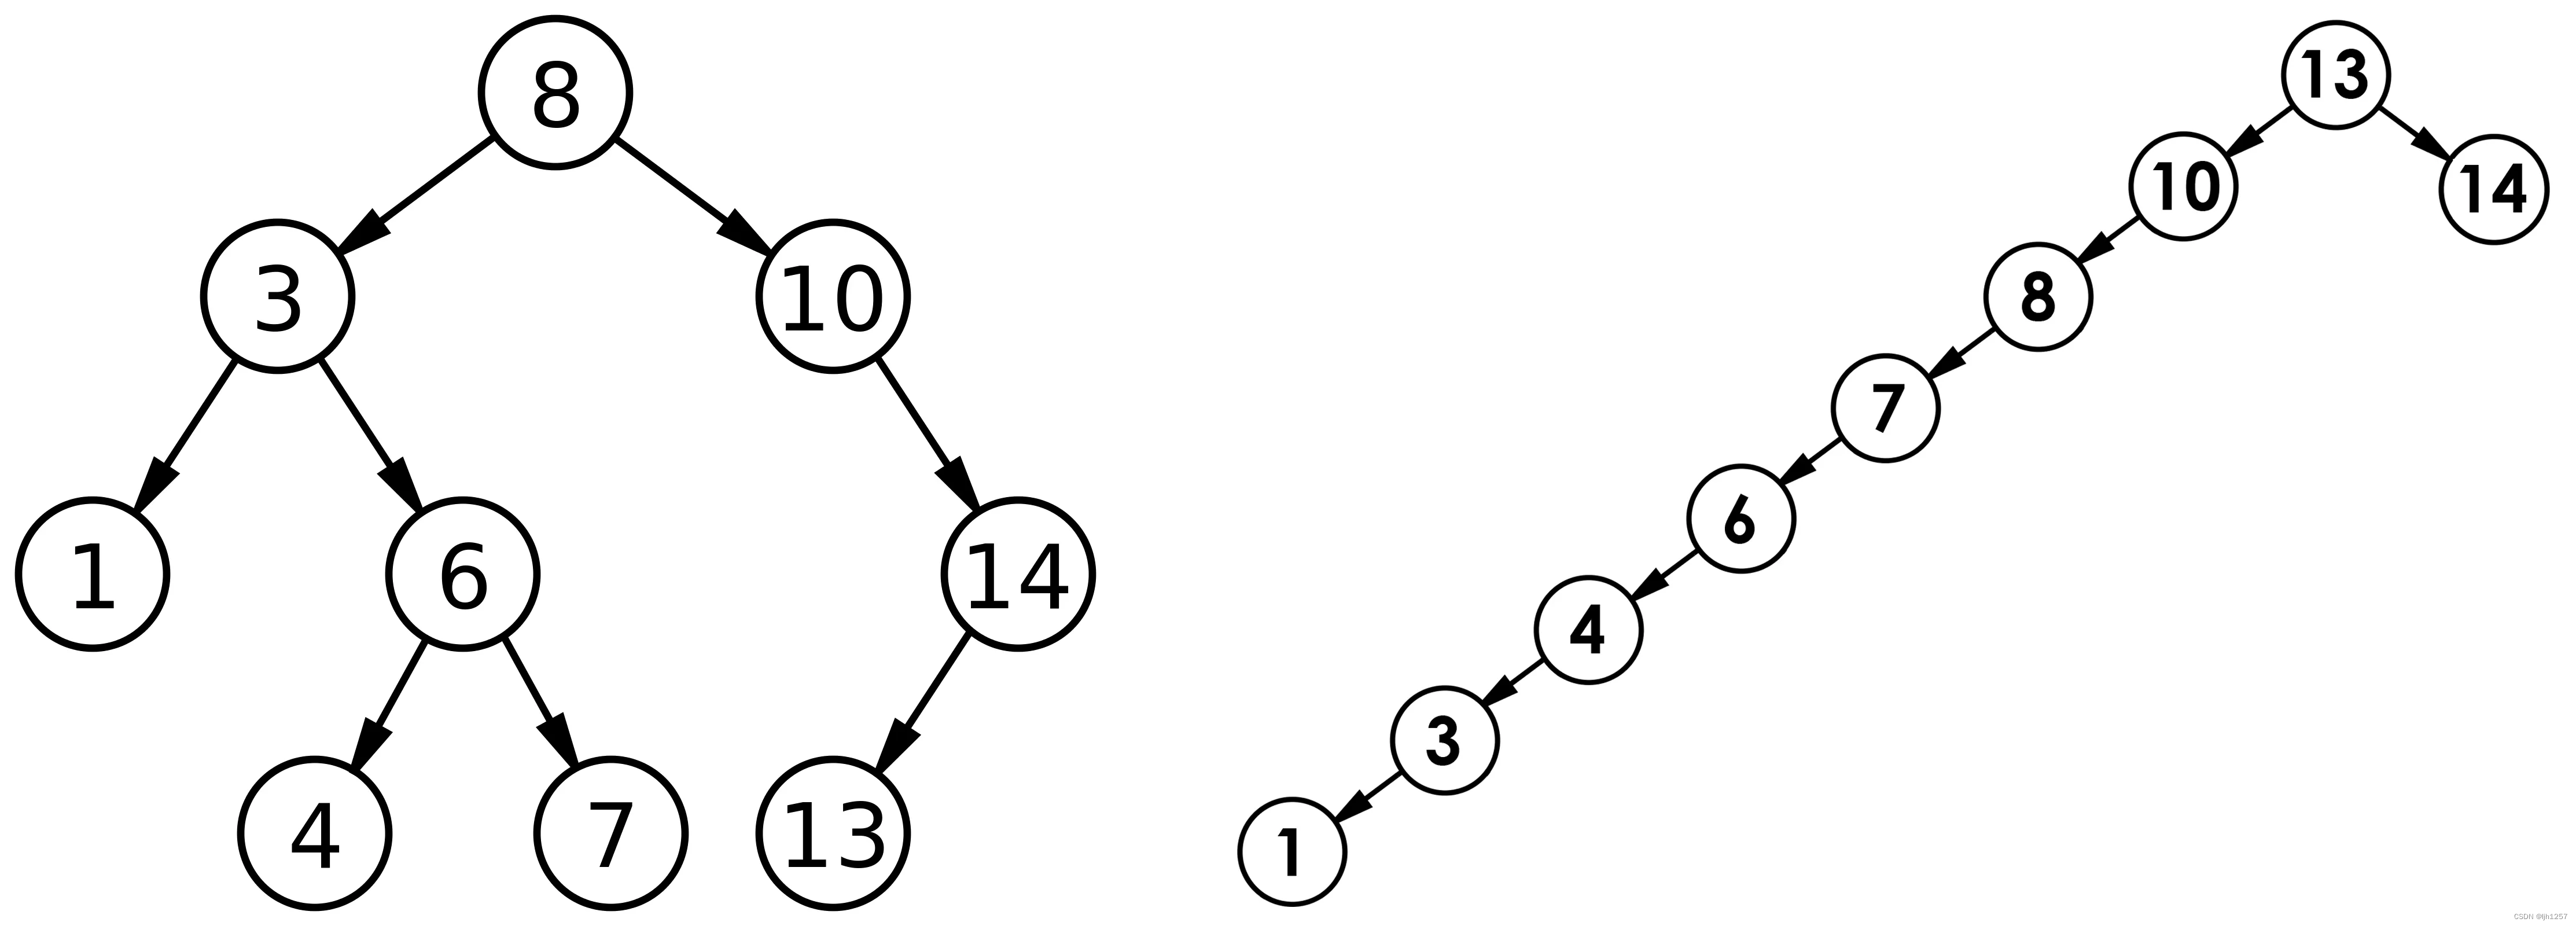 C++笔记：二叉搜索树（Binary Search Tree）